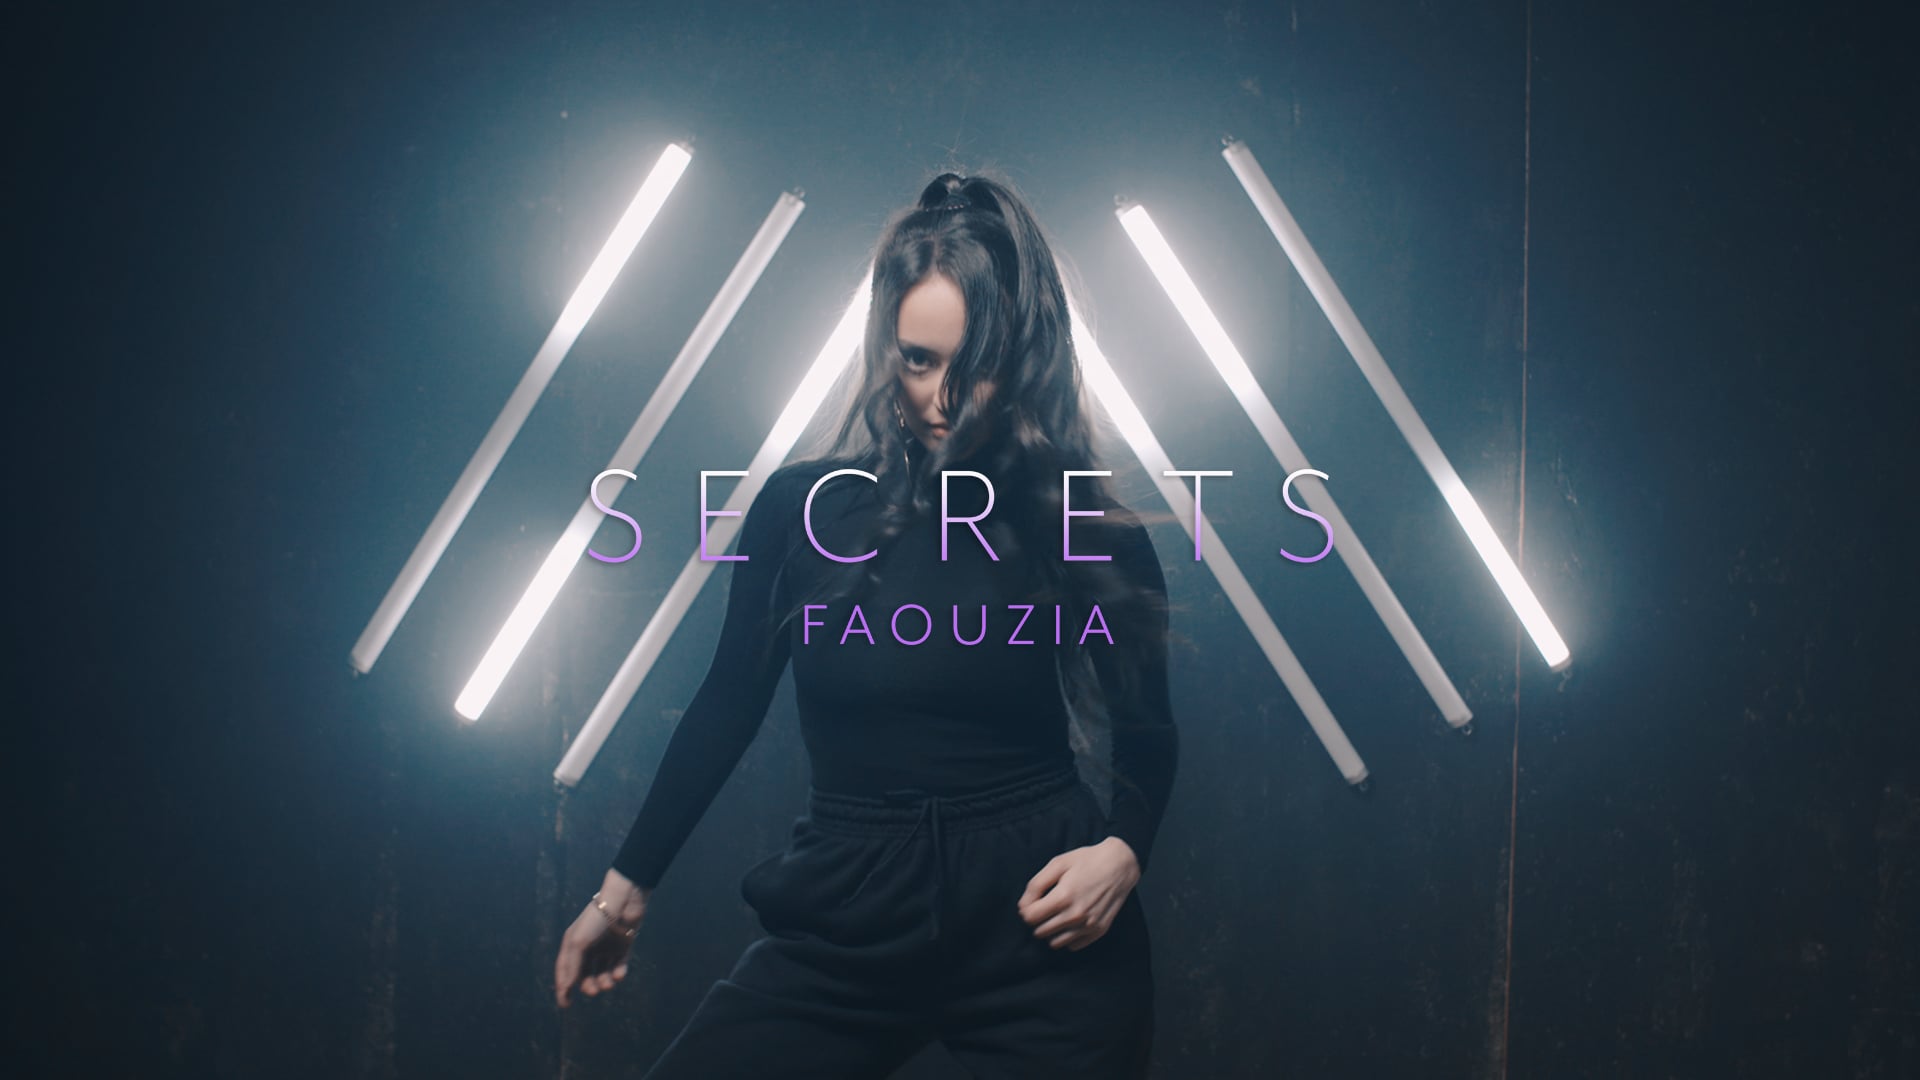 Faouzia - Secrets